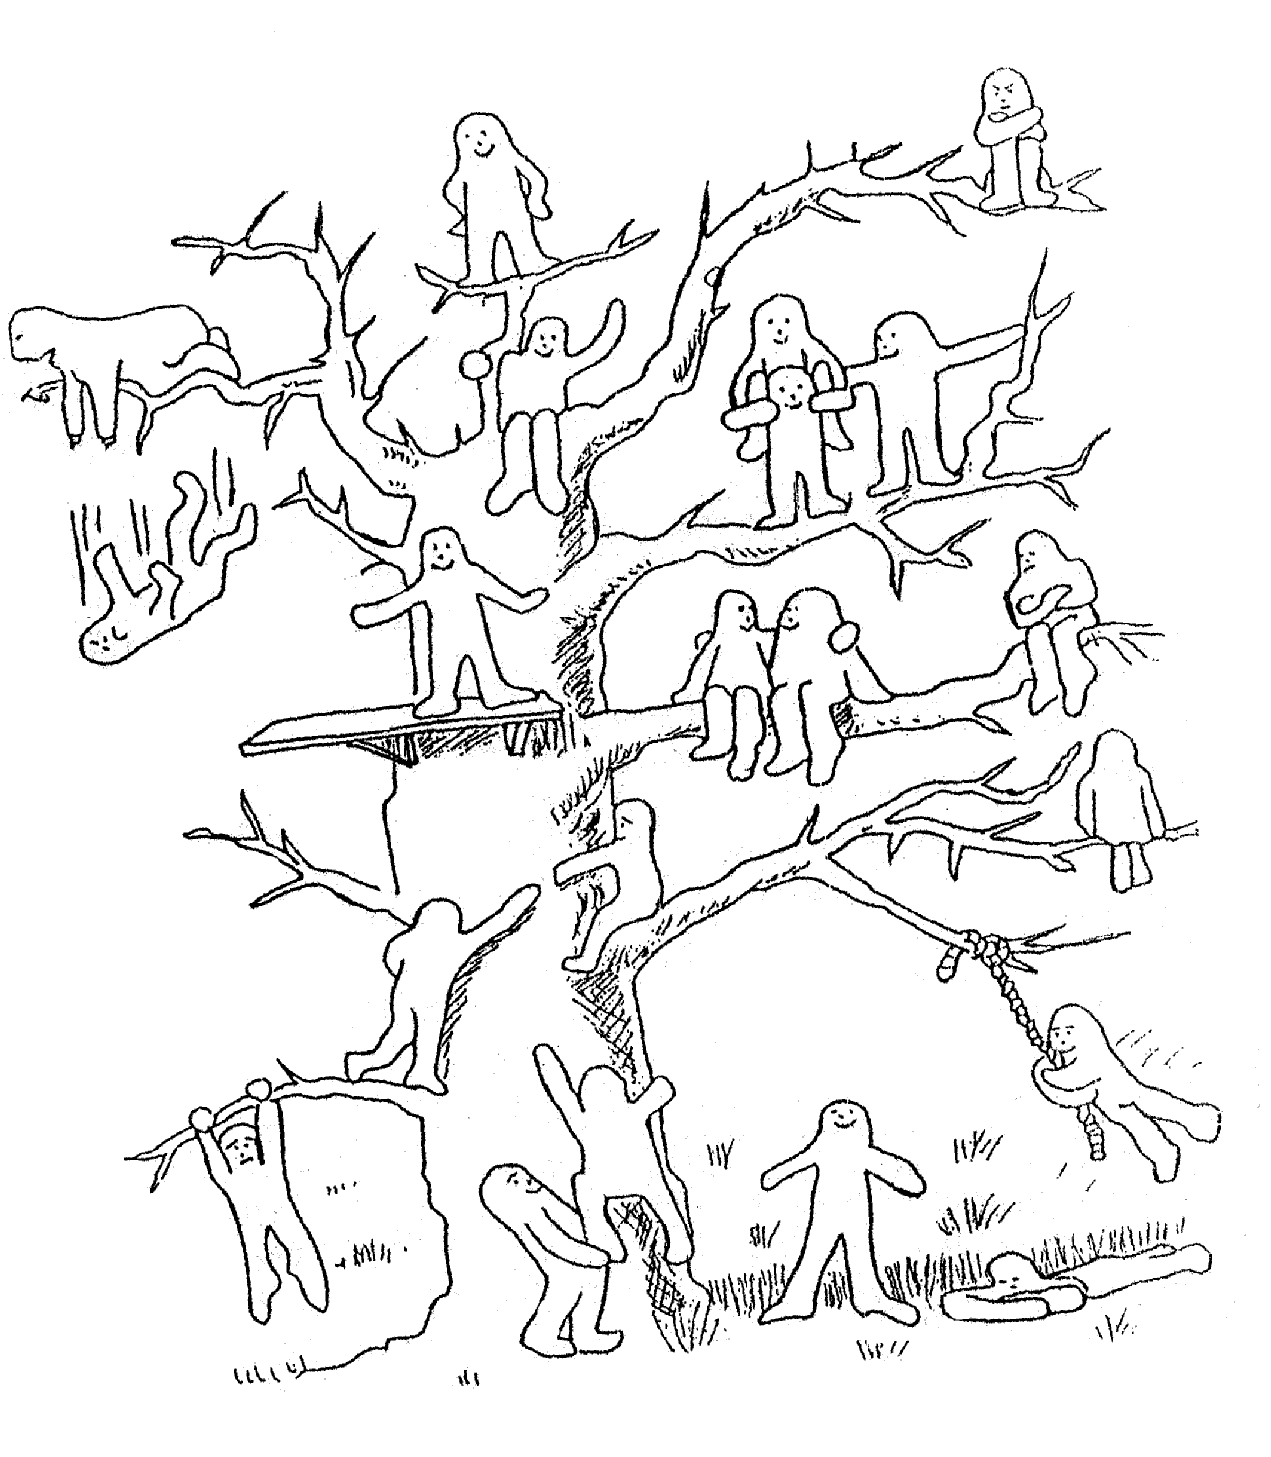 Проективная методика дерево Лампен